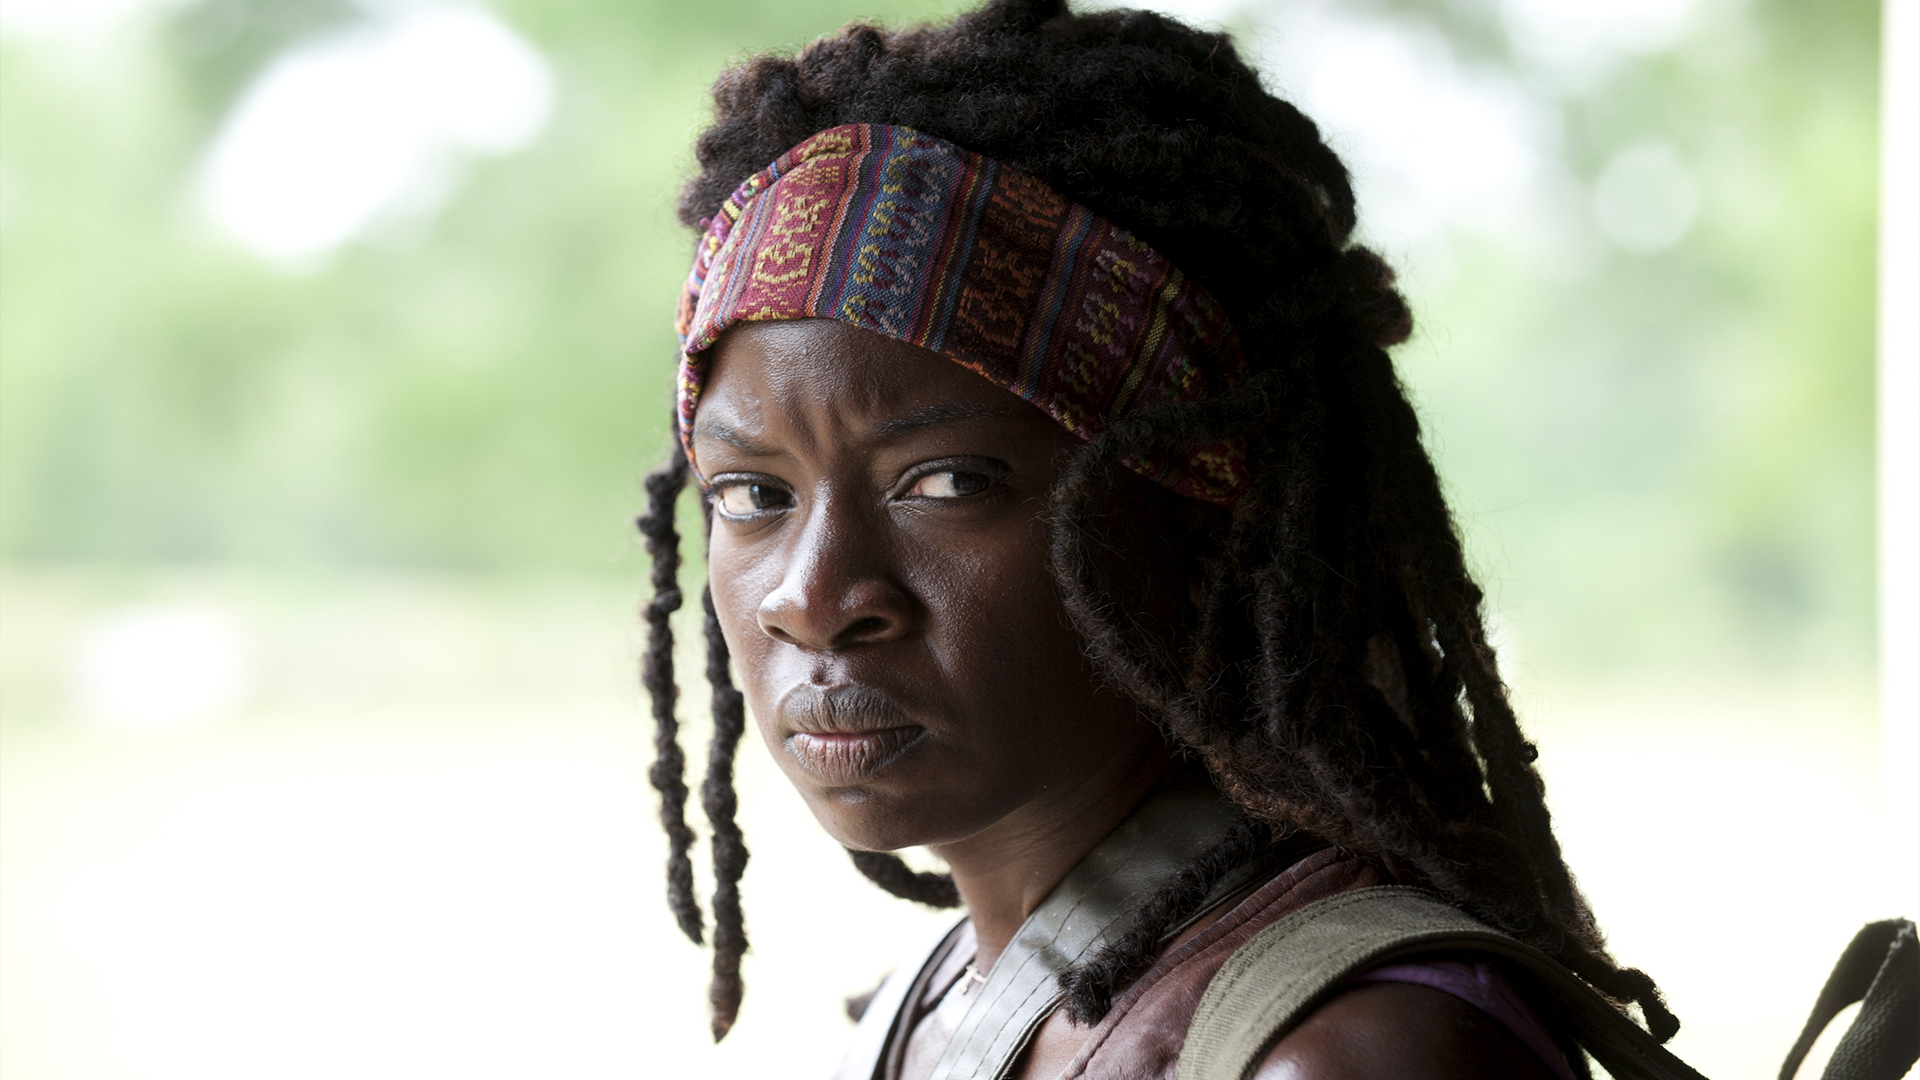 The Walking Dead: Best of Michonne Season 1 Episode 1 - Seed: Best of Michonne Edition